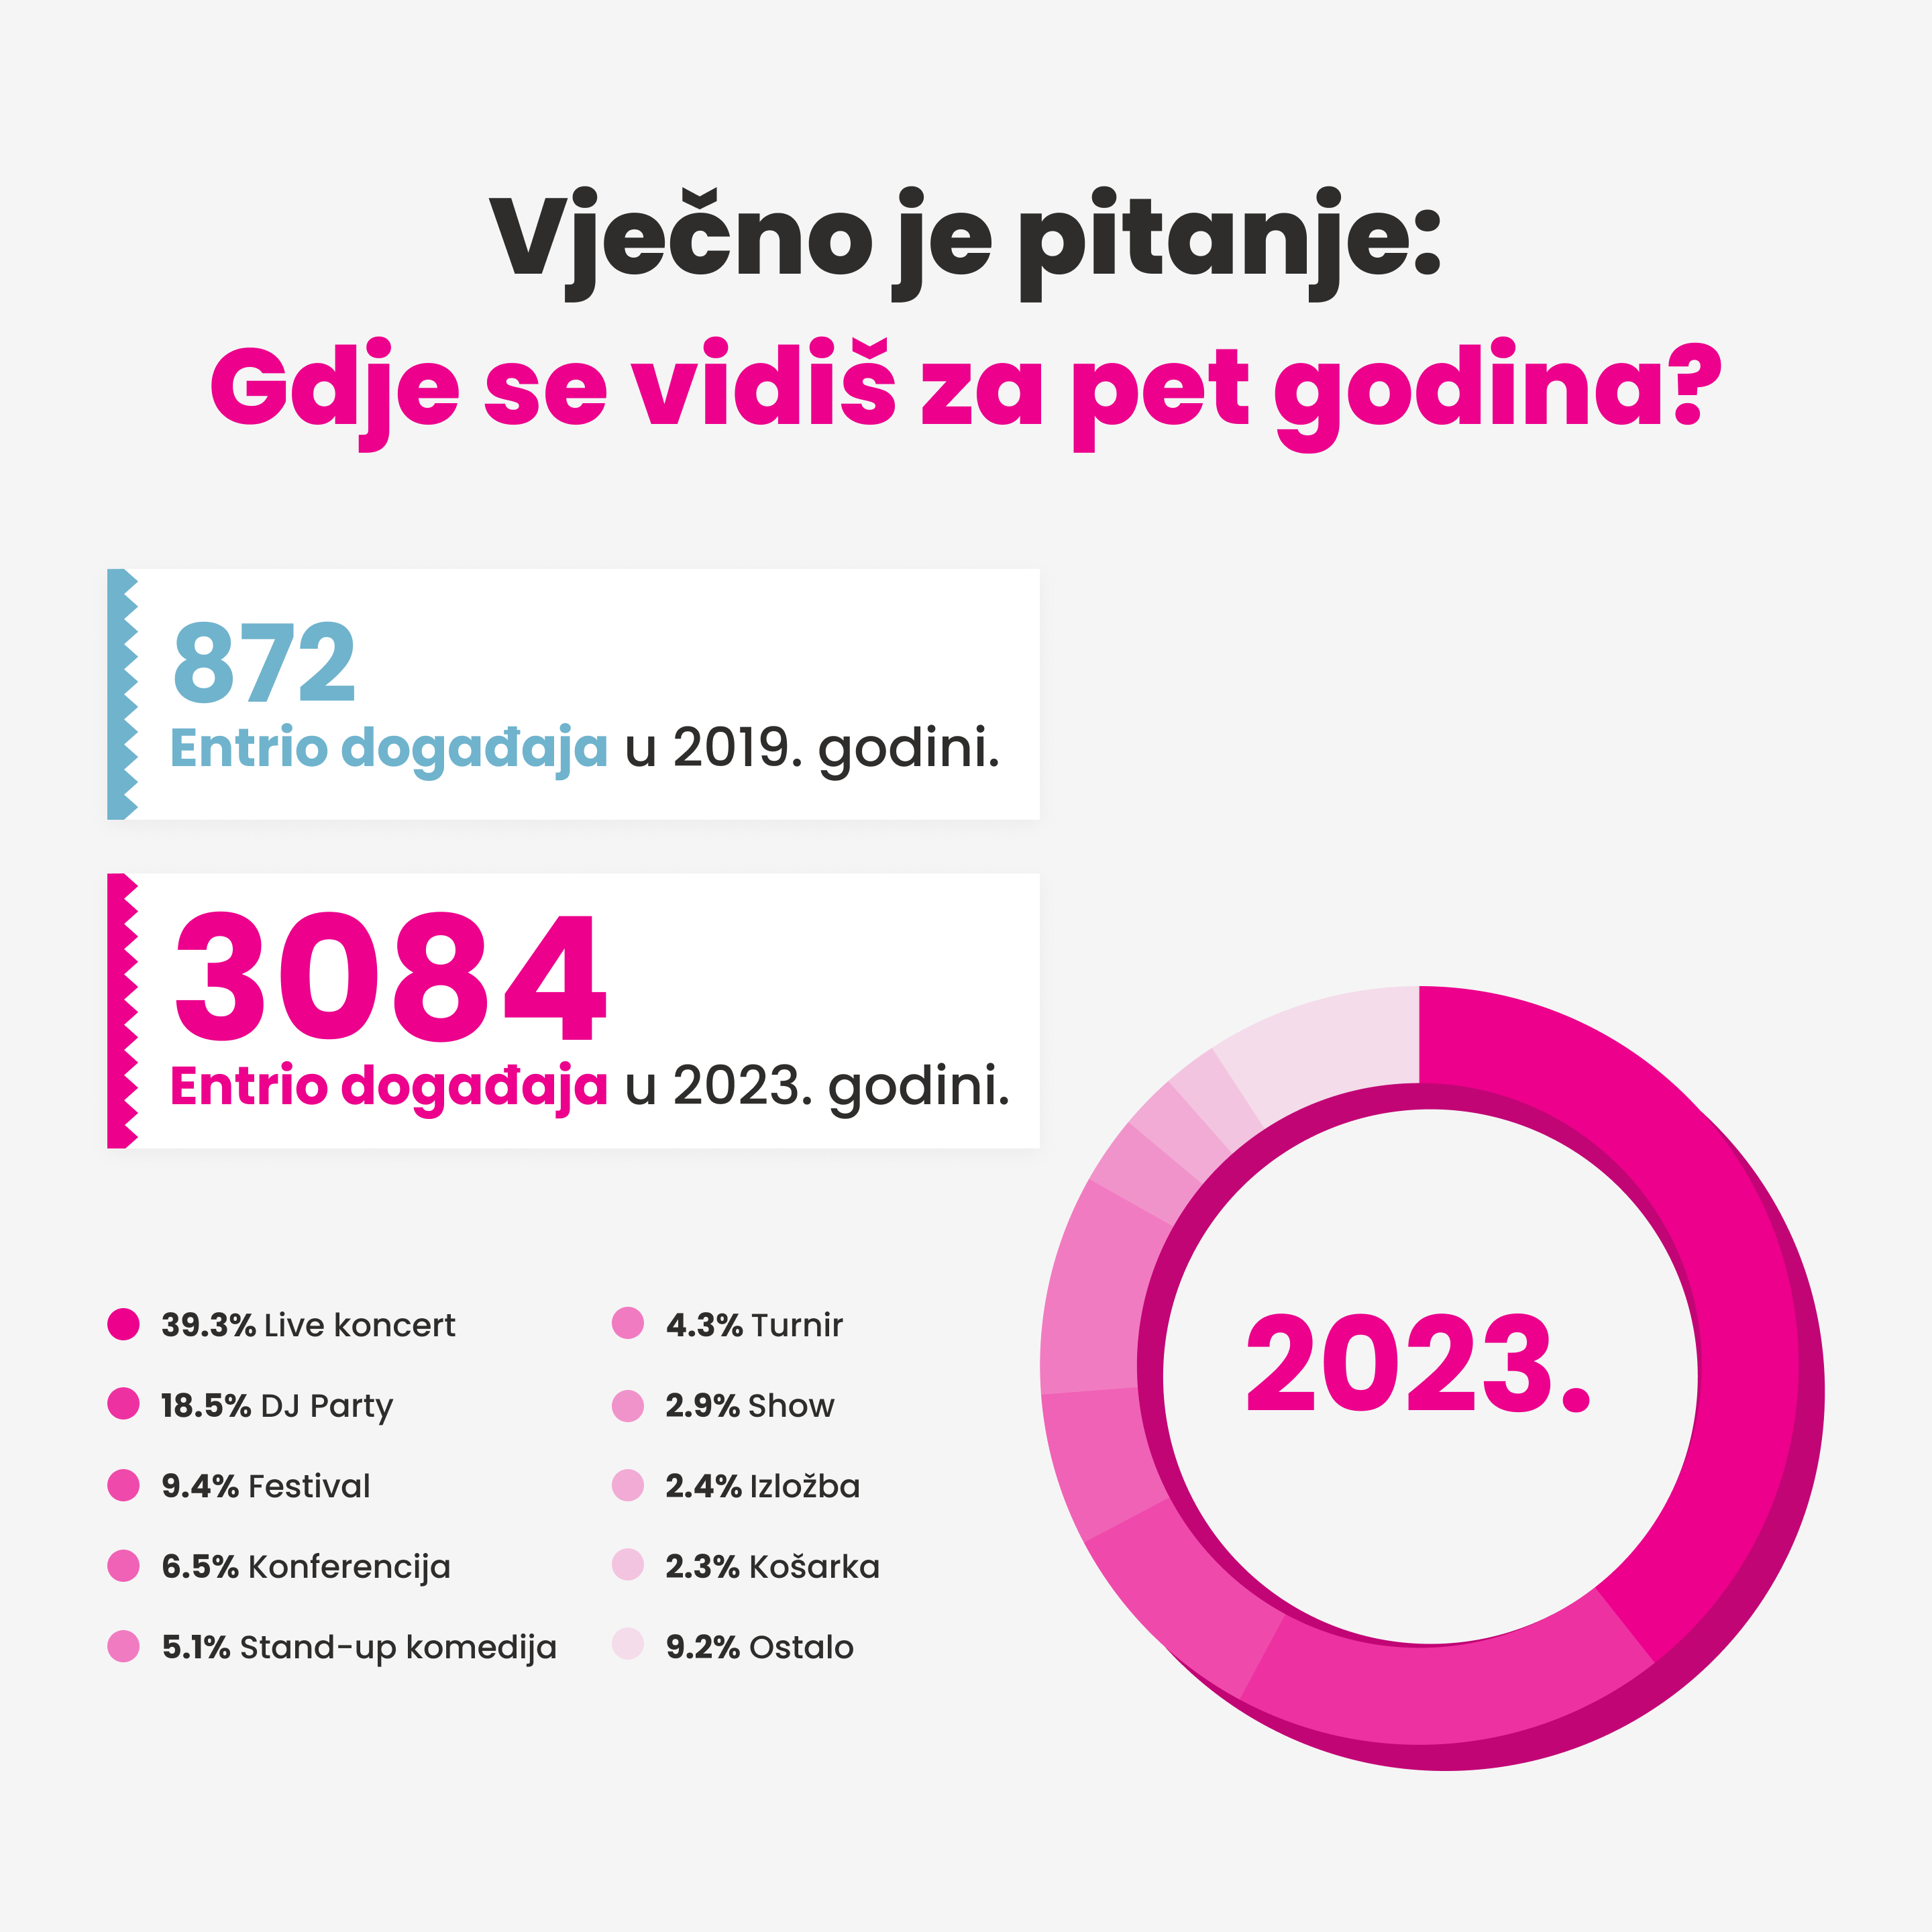 Infografika u kojoj je prikazan skok u broju događaja na Entrio.hr u odnosu na 2019. godinu